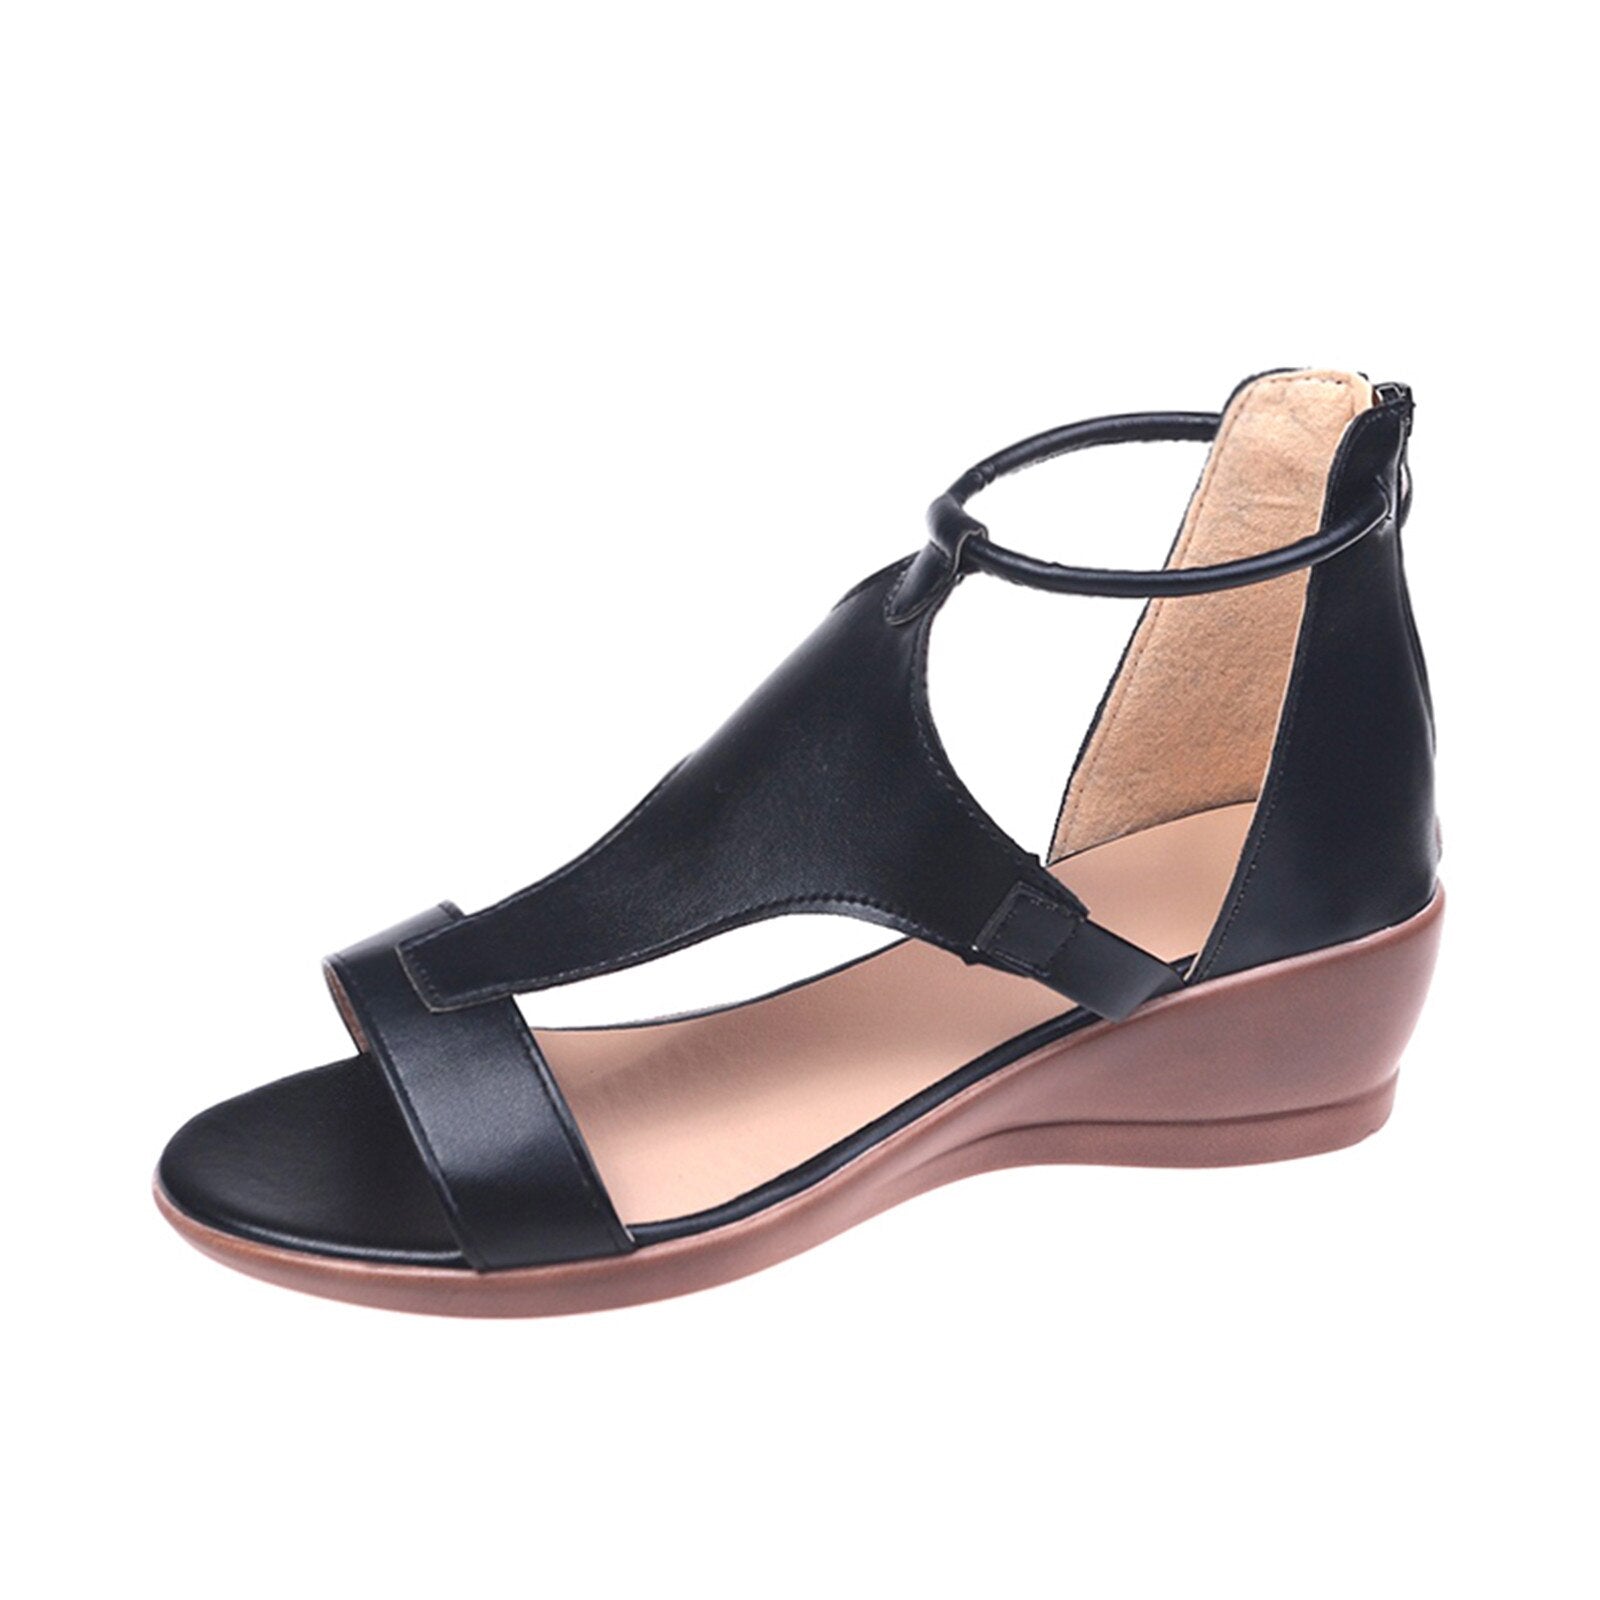 Brenna Ortho Sandalen - Comfortabele sleehak sandalen 50%KORTING